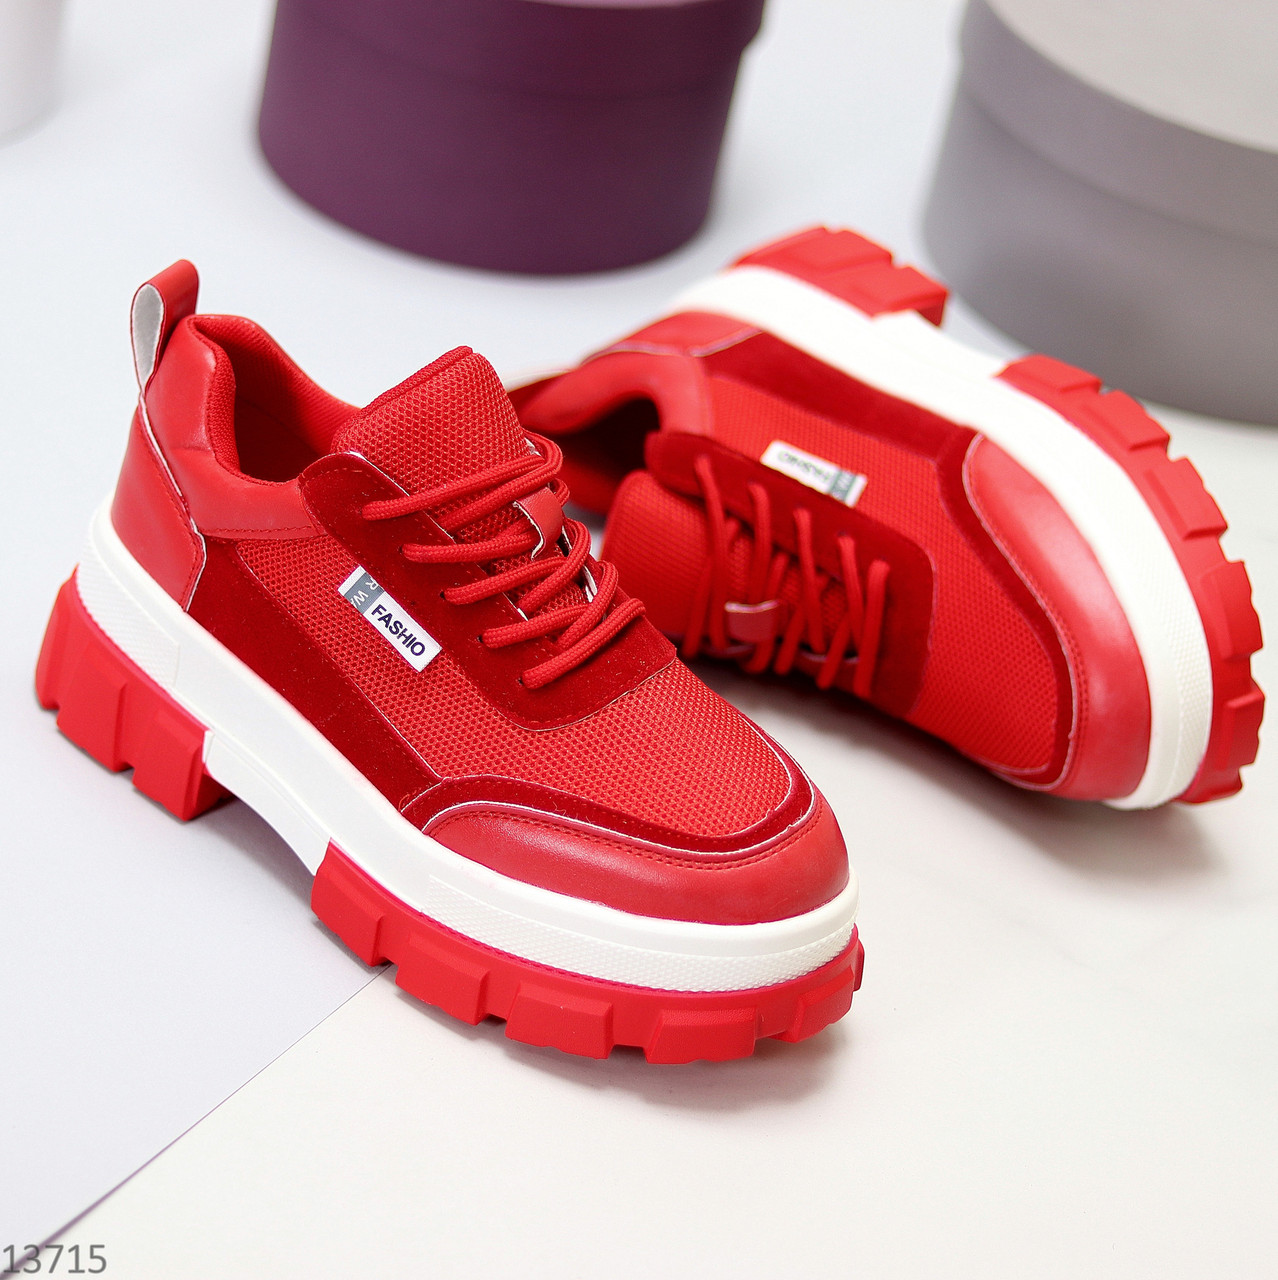 Ультра модные люксовые красные женские кроссовки сникерсы на платформе (обувь женская)